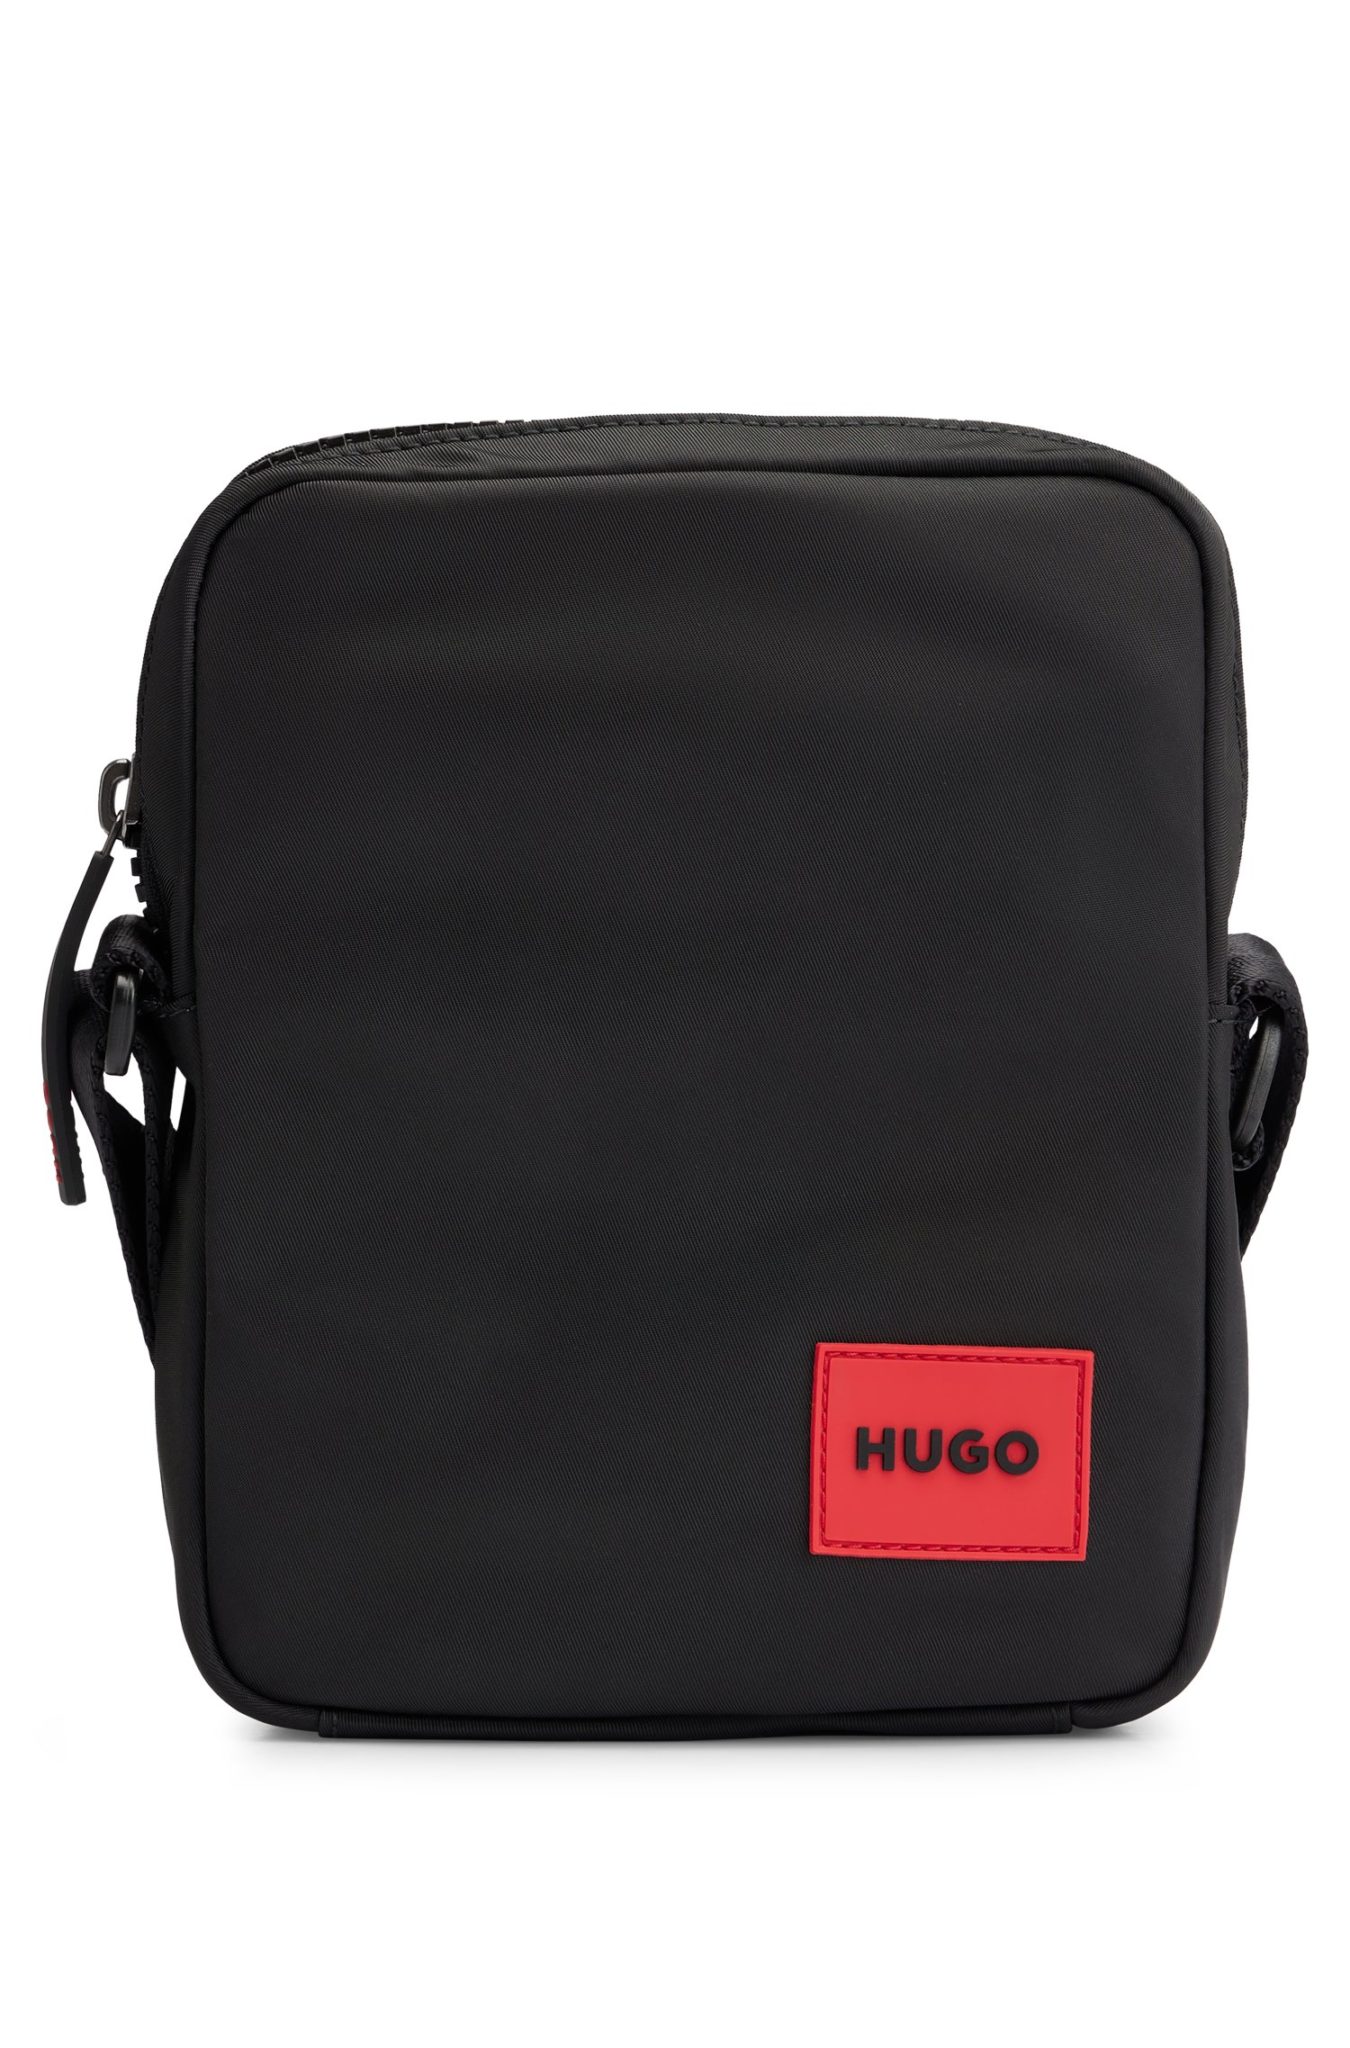 Hugo Boss Sac reporter avec étiquette logo en gomme rouge